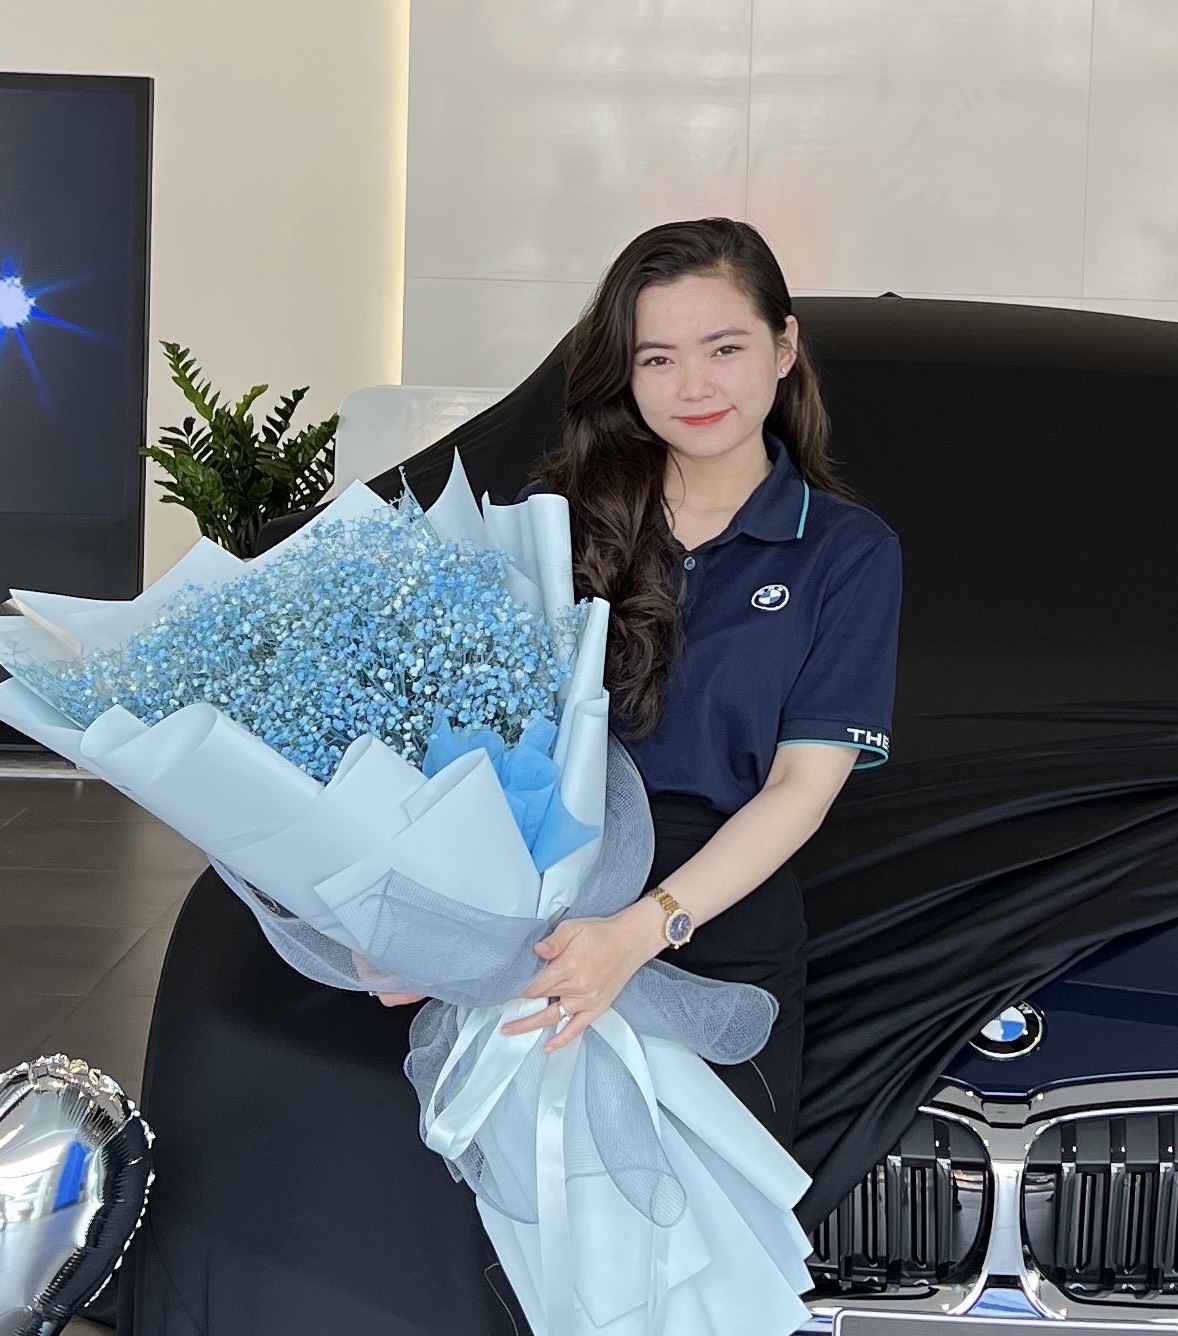 Ms Quỳnh BMW Bình Dương